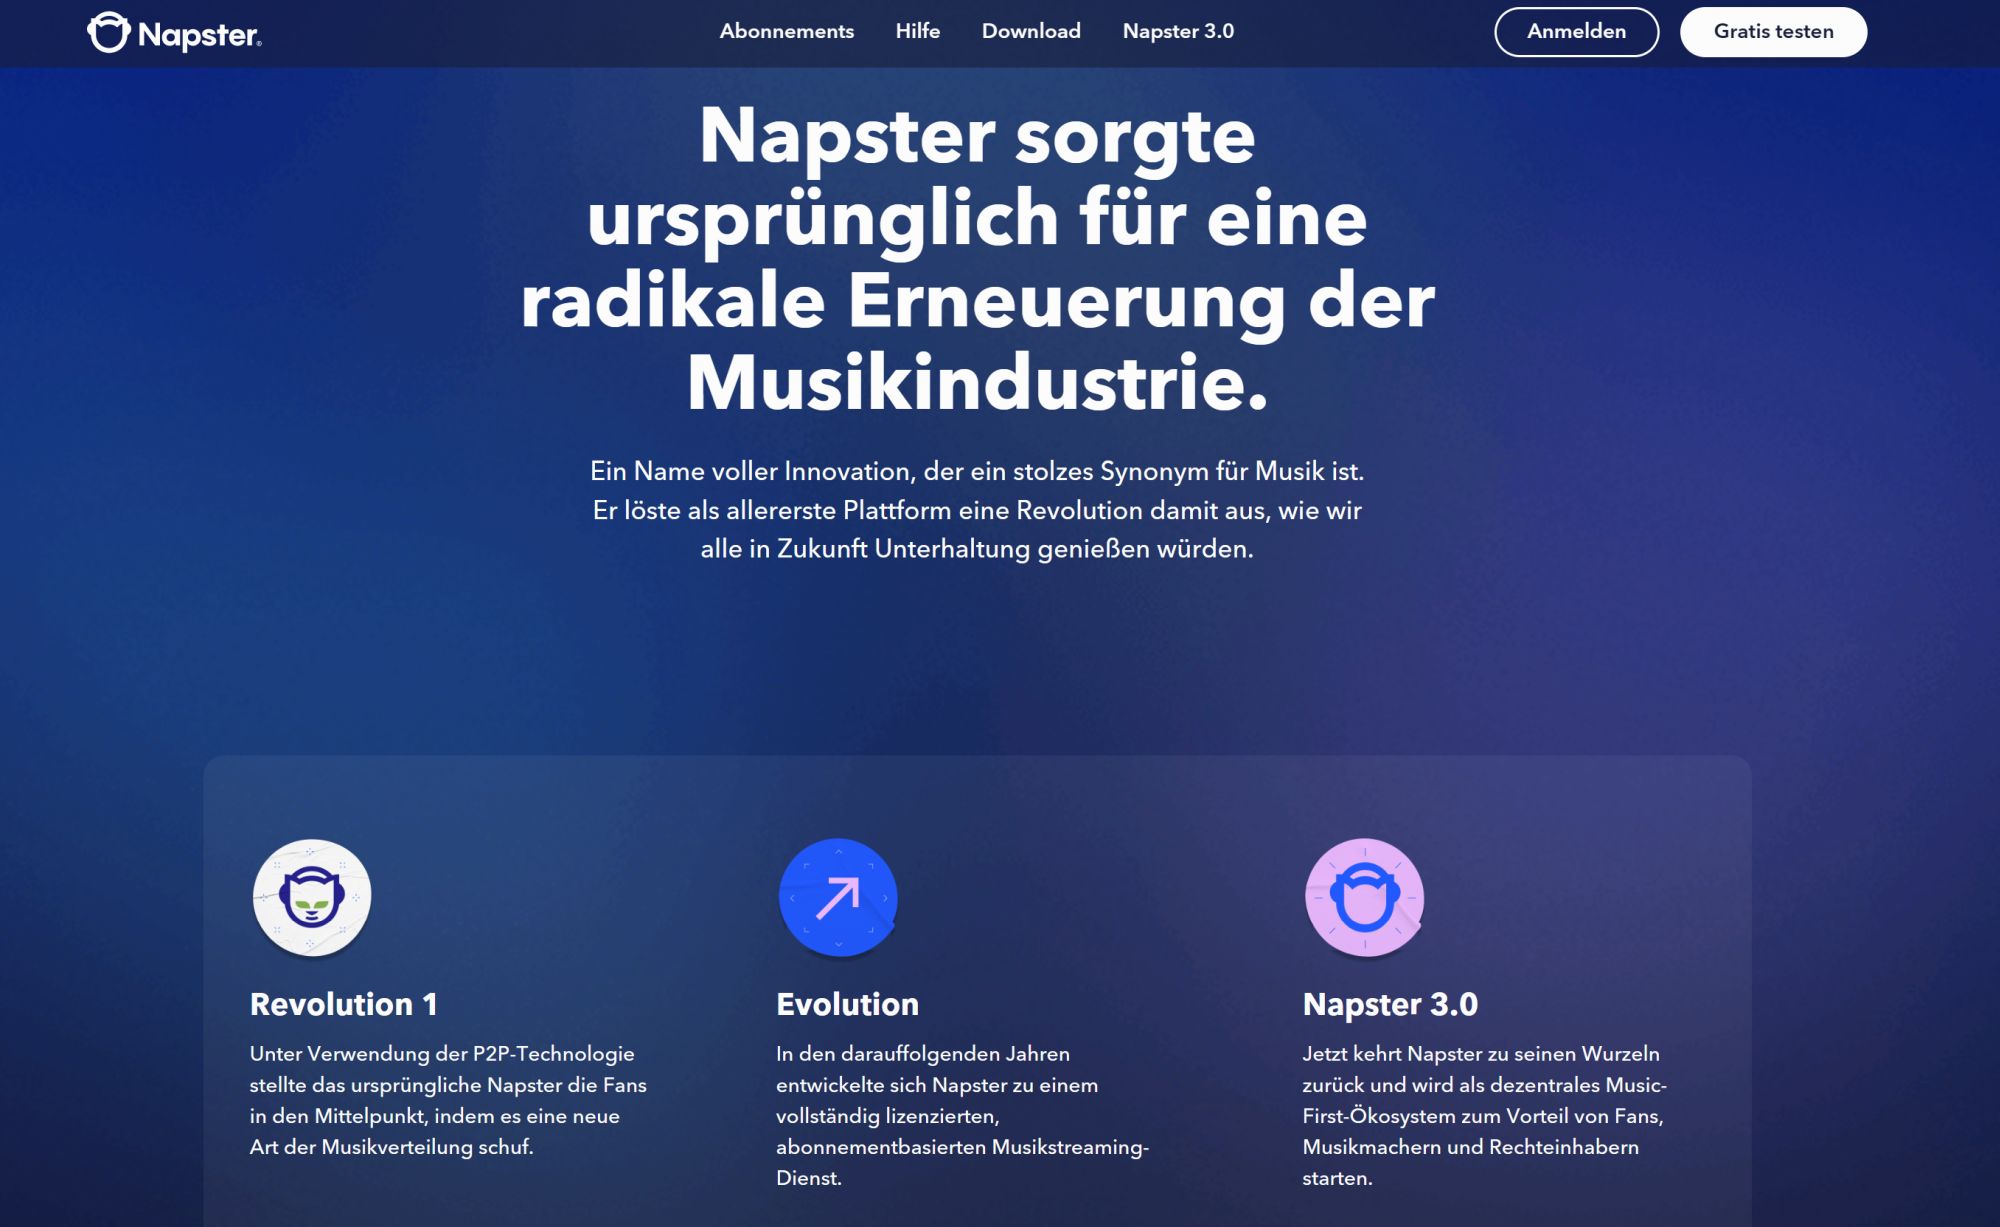 Das neue Napster 3.0 - eine Ankündigung (Screenshot)